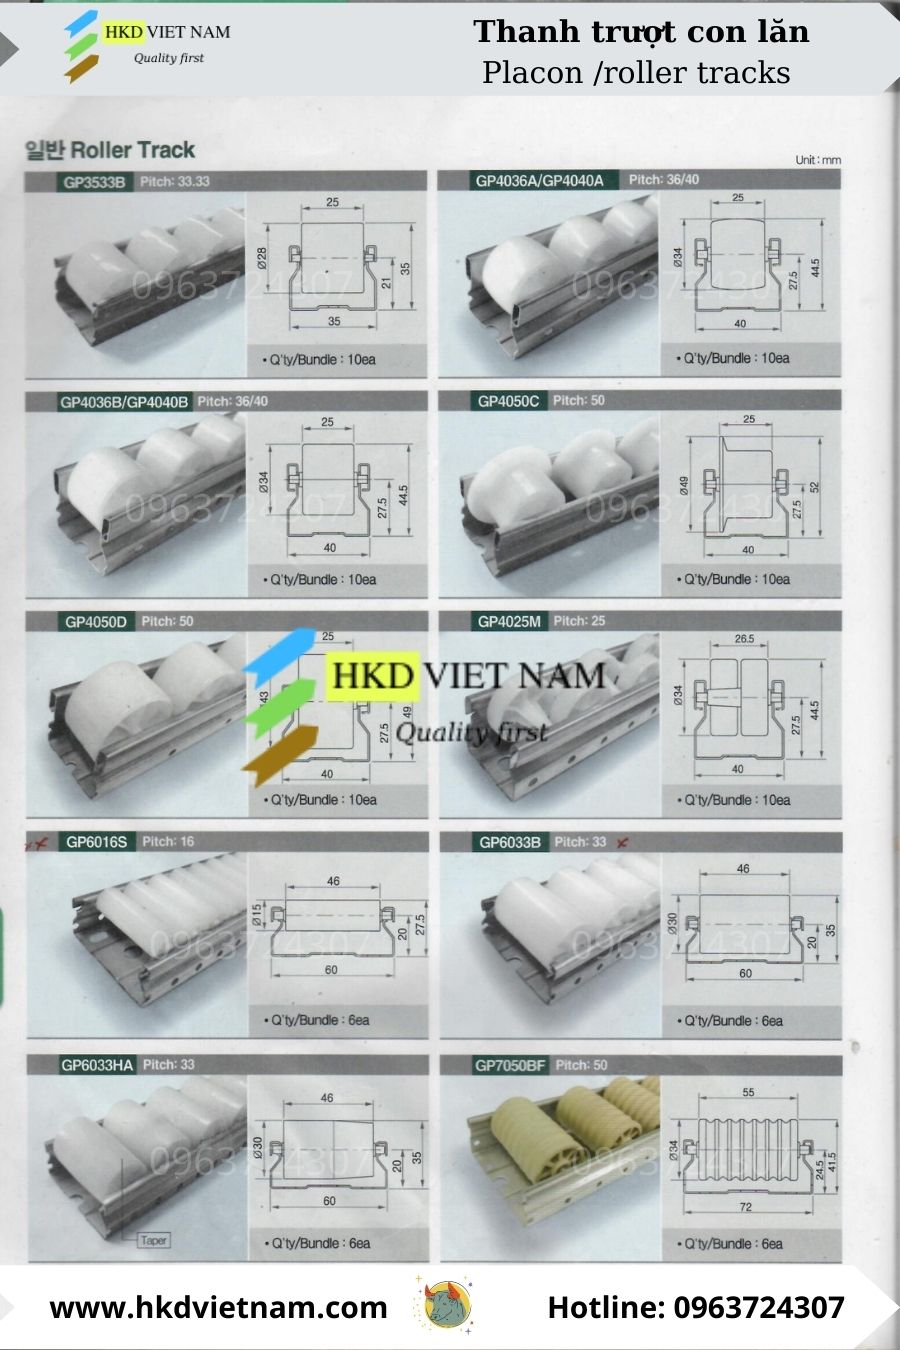 sản phẩm của chúng tôi không có xuất xứ từ Trung quốc, do đó chất lượng thanh truyền con lăn con lăn mua của HKD Việt Nam luôn được đảm bảo uy tín chất lượng trên thị trường.